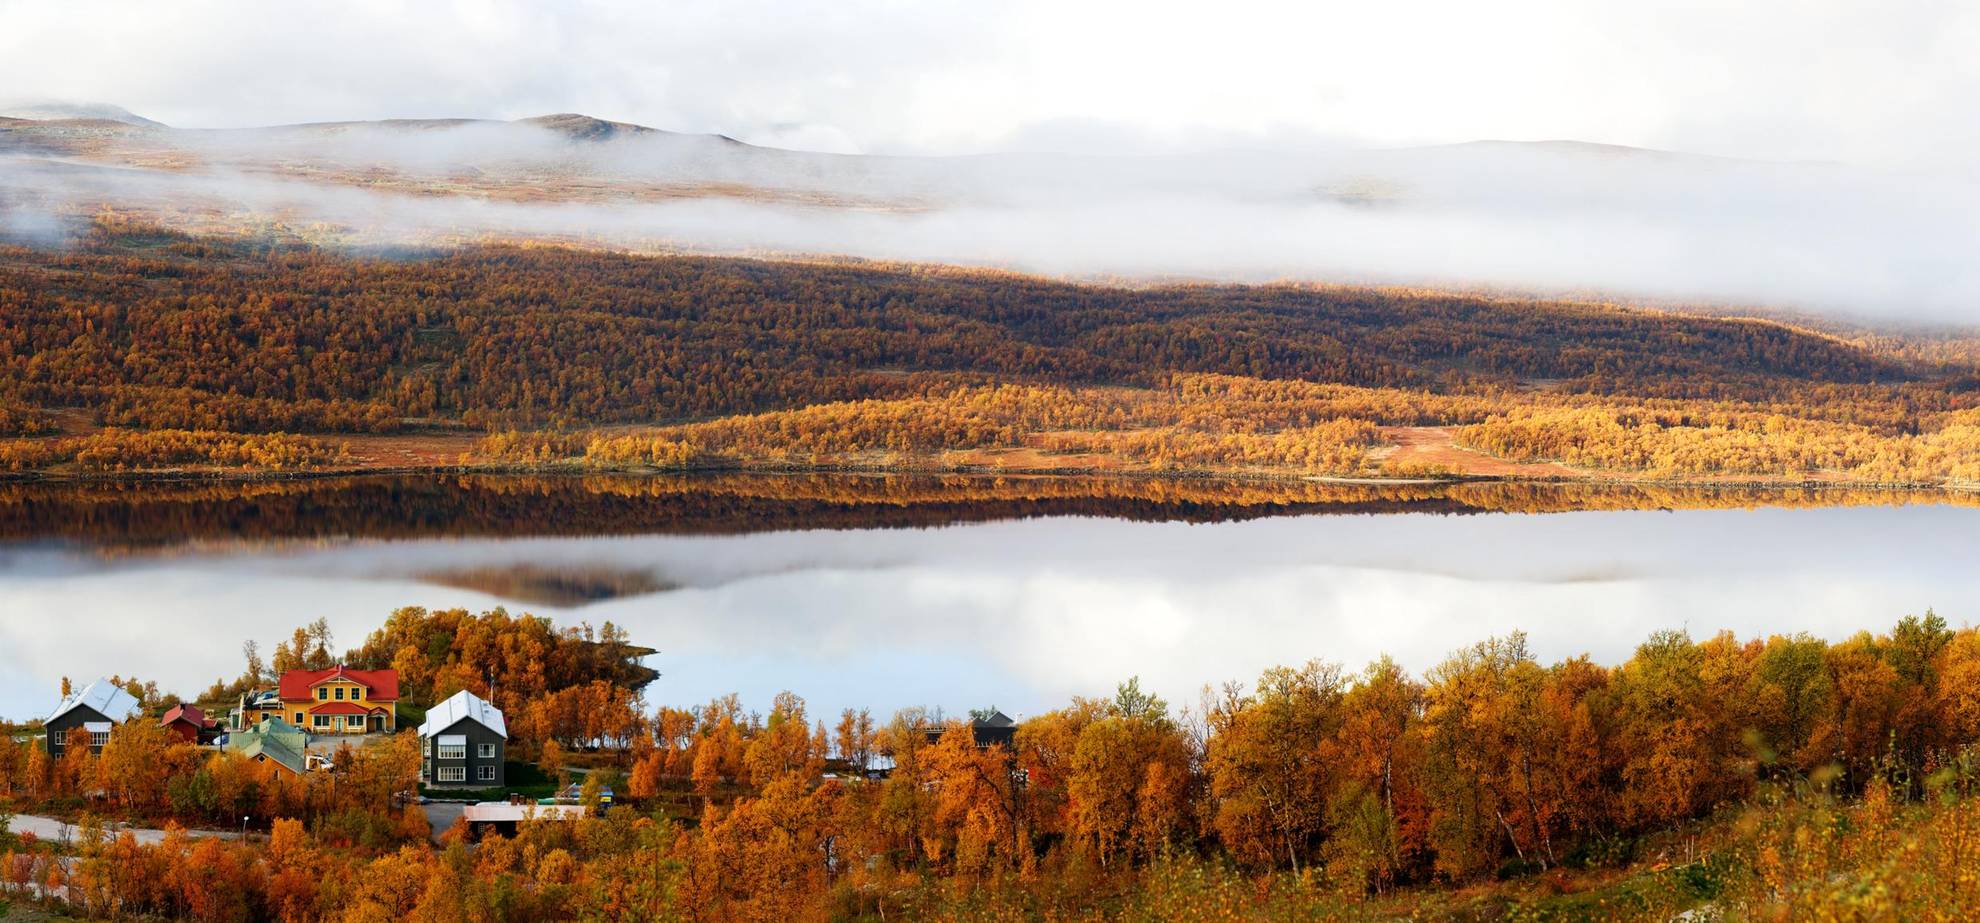 Een prachtig herfstbeeld van een hotel aan een meer in de bergen. De bomen zijn oranje en er hangt mist over de berg aan de andere kant van het meer.